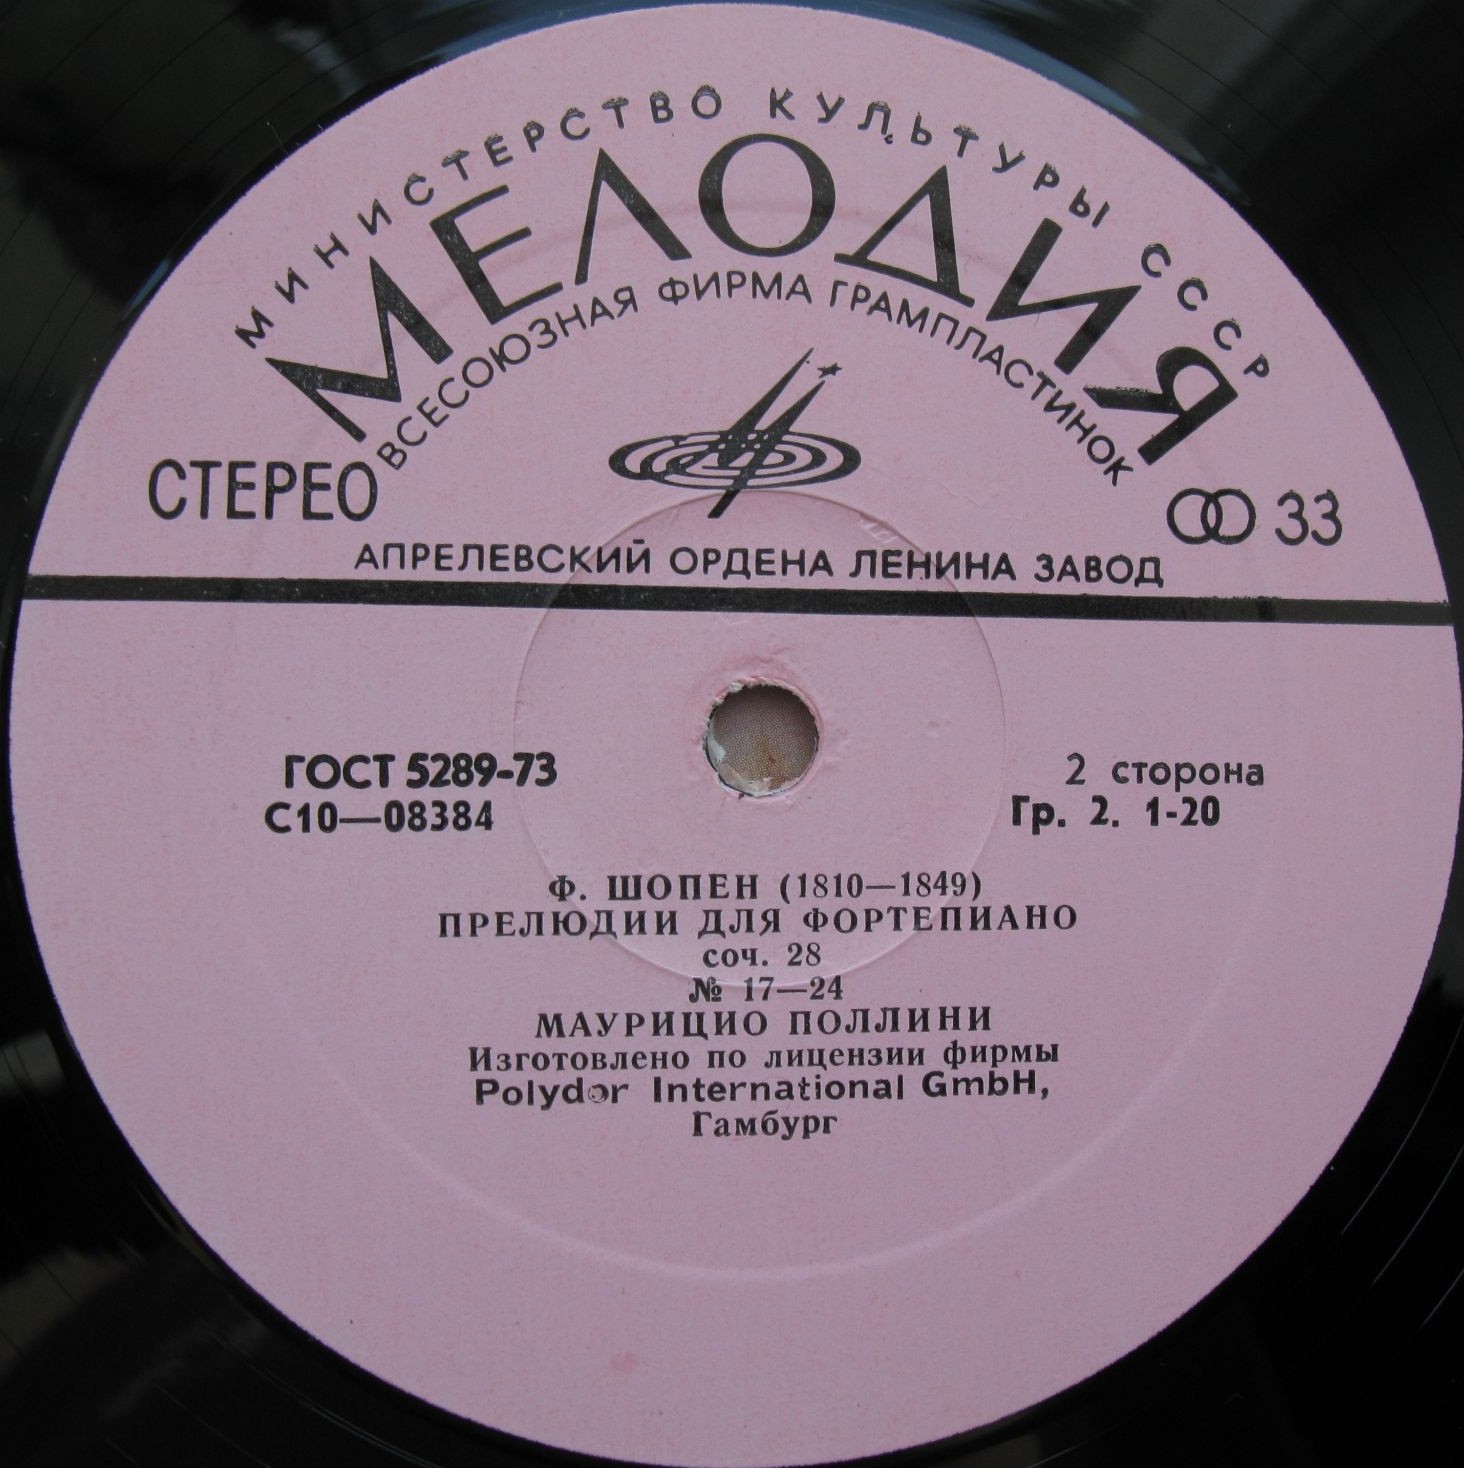 Ф. Шопен (1810-1849). Прелюдии для фортепиано, соч. 28 (Маурицио Поллини)